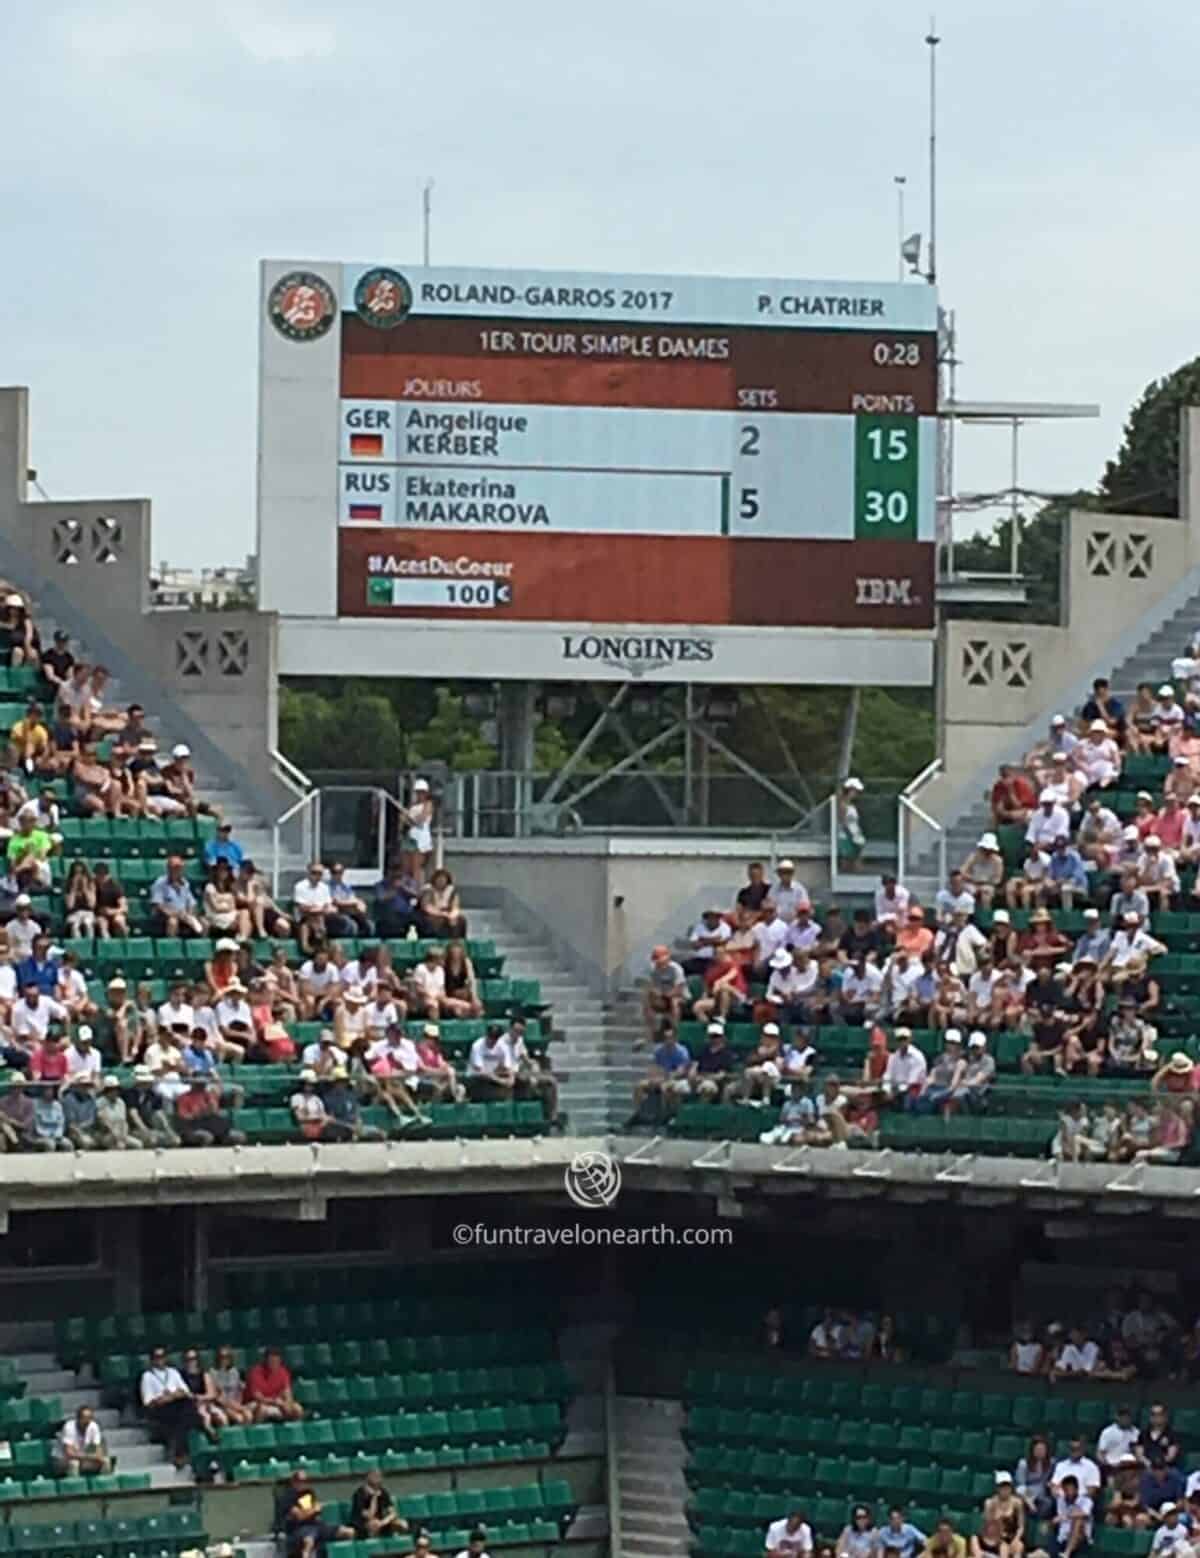 Roland-Garros,French Open 2017